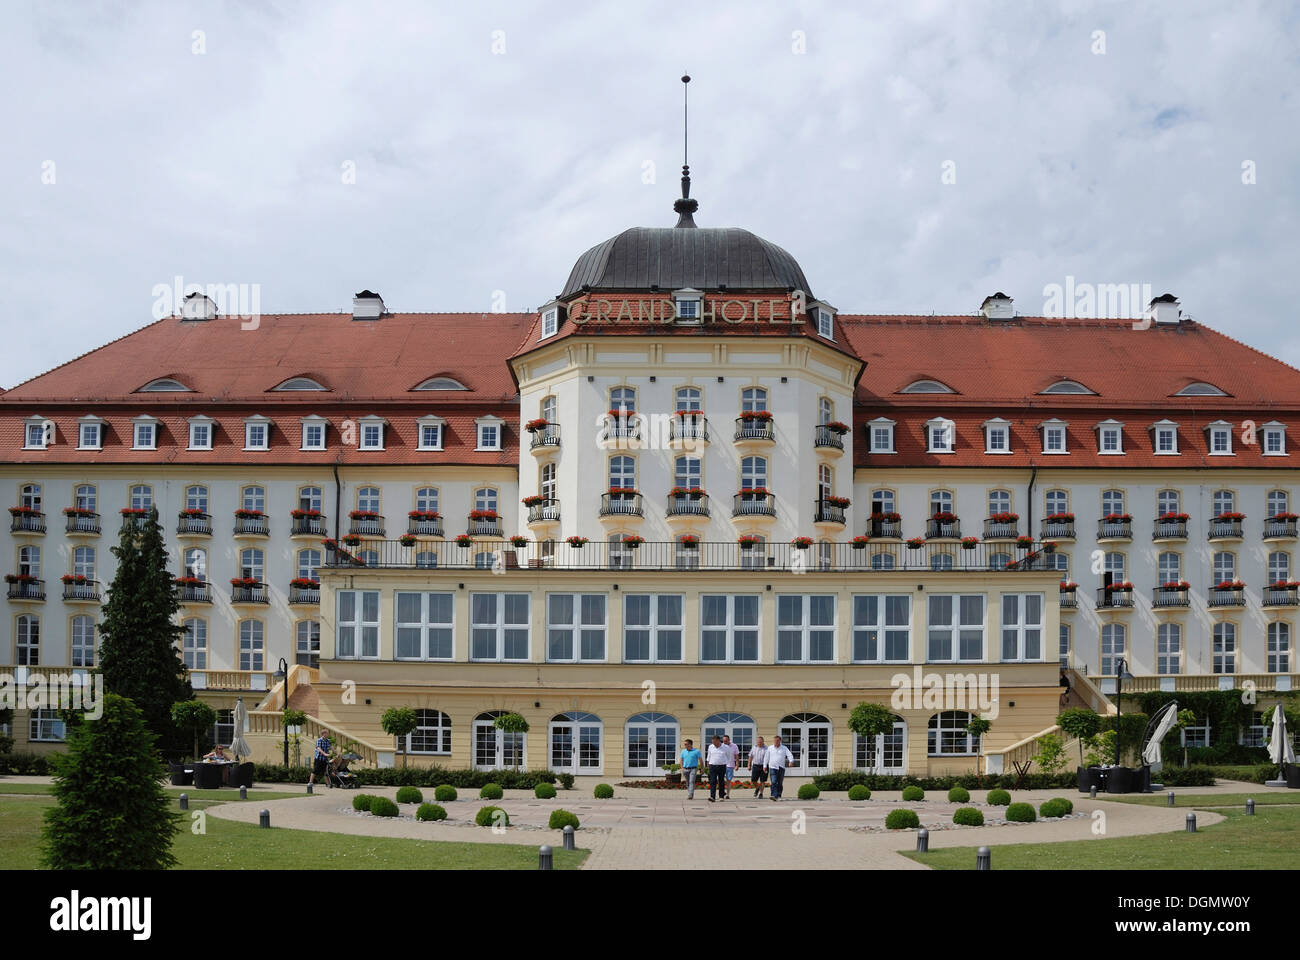 Grand Hotel am Strand von Ostseebad Sopot in Polen. Stockfoto